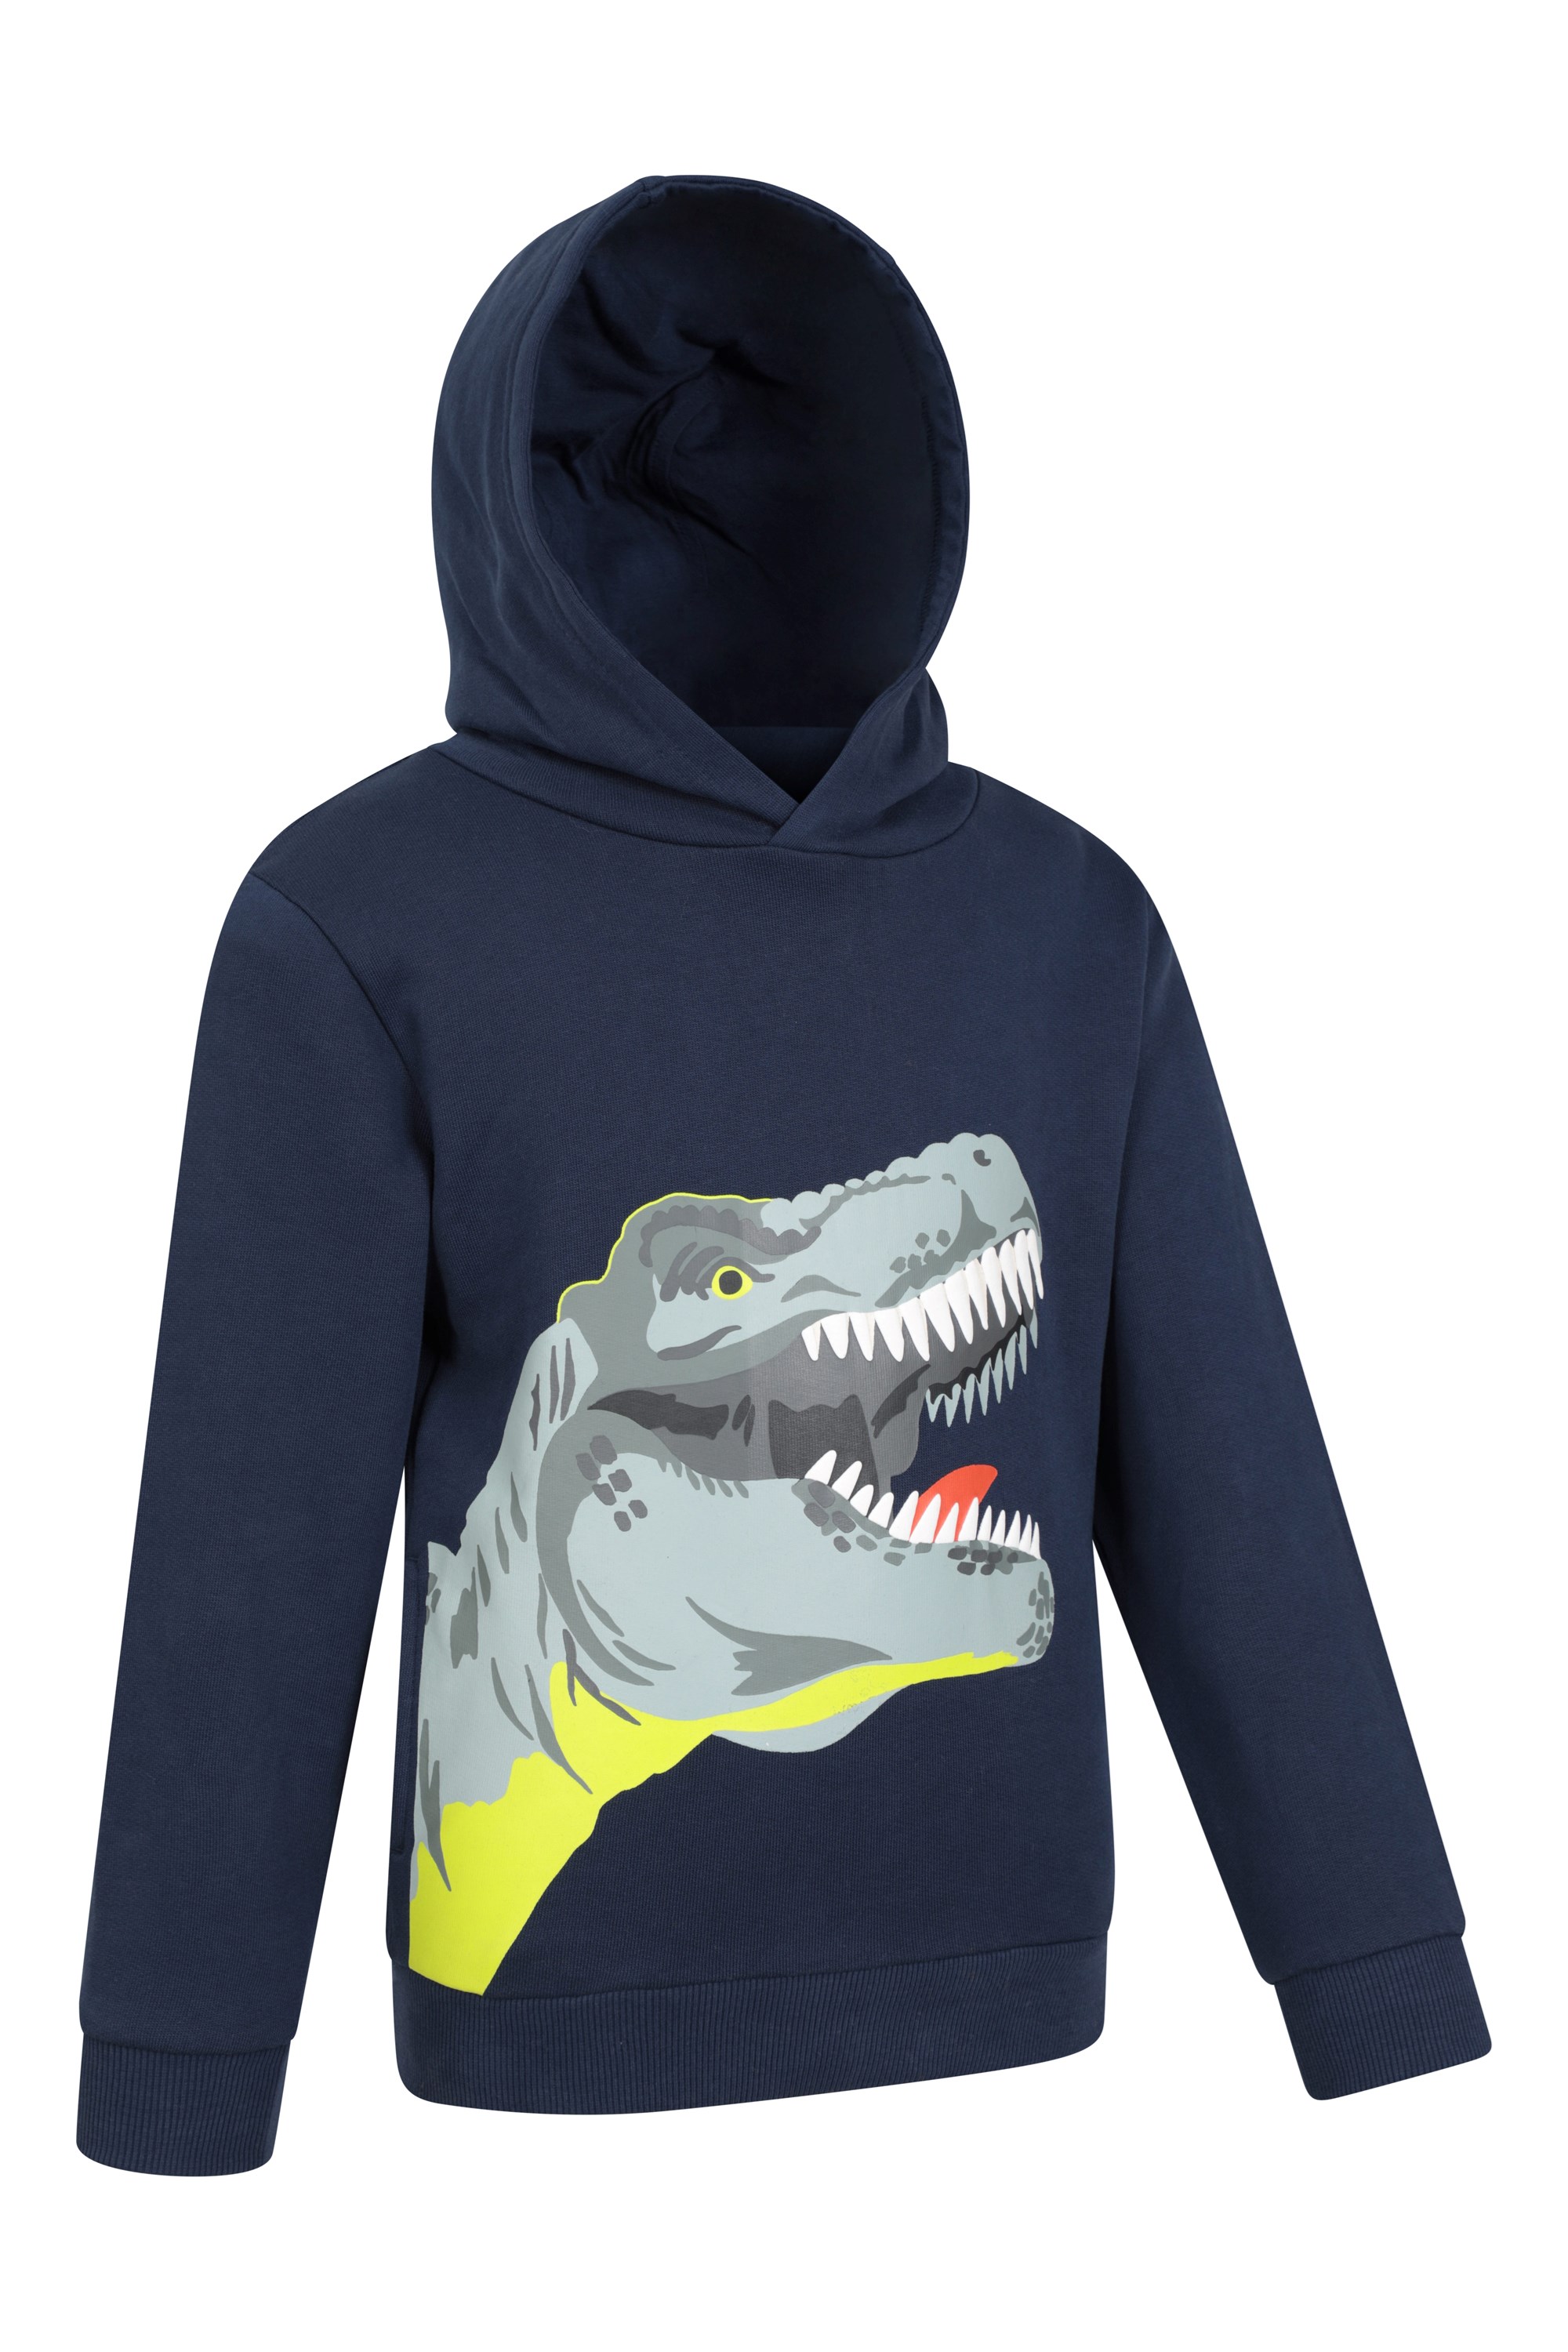 dinosaur hoodie, T-Rex Hoodie For Kids